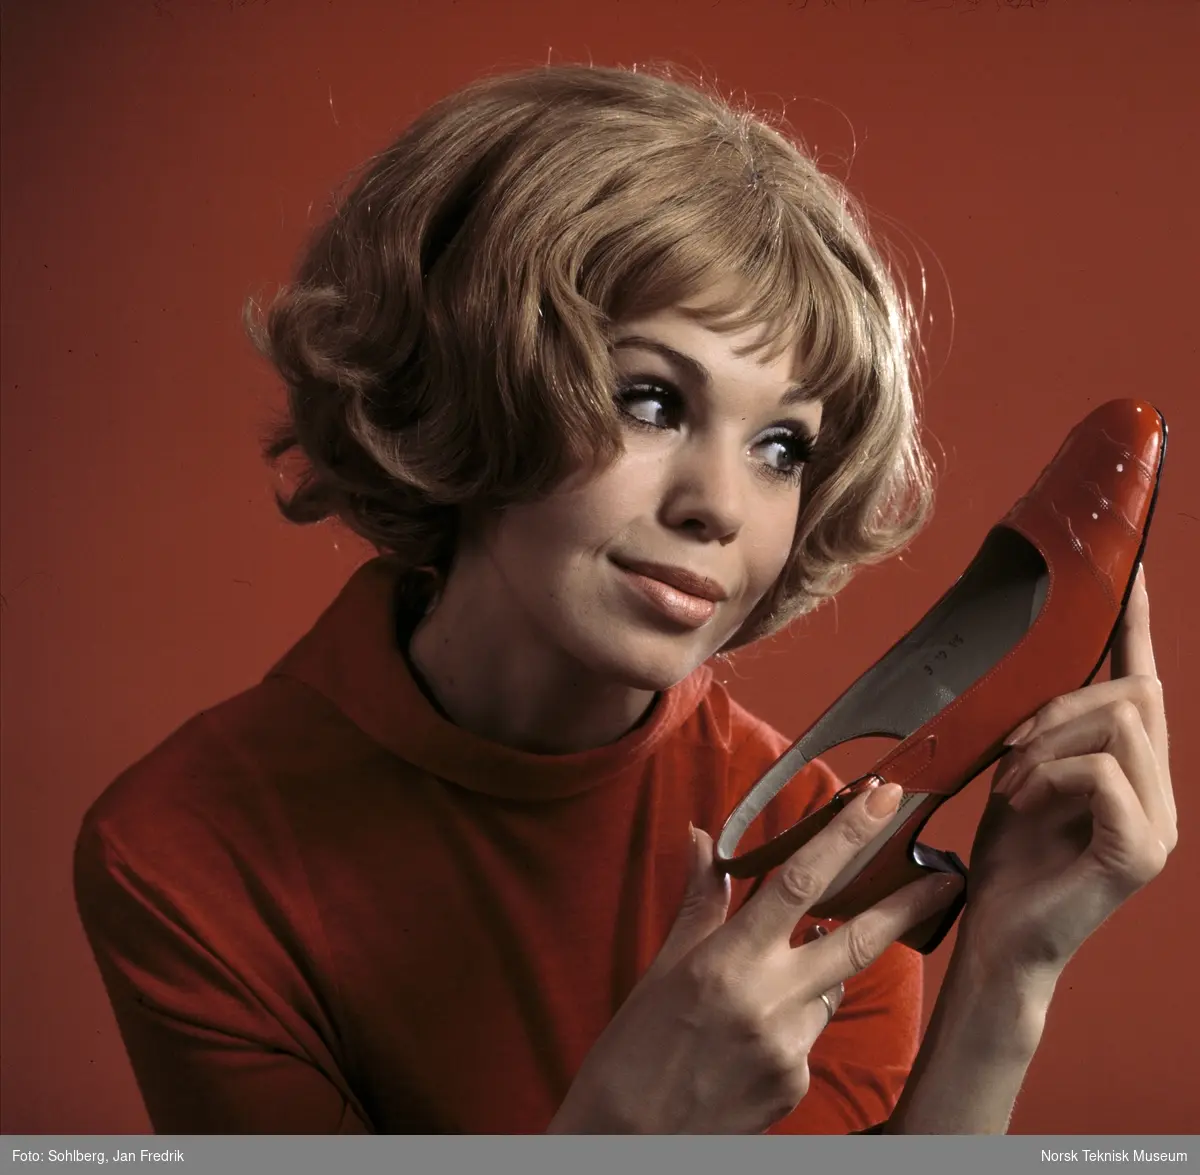 Tidlig norsk reklame- / motefoto. En kvinnelig modell holder opp en rød sko med høy hæl, hun virker fornøyd med tidens skomote. Hun har rød bluse. Rød bakgrunn.